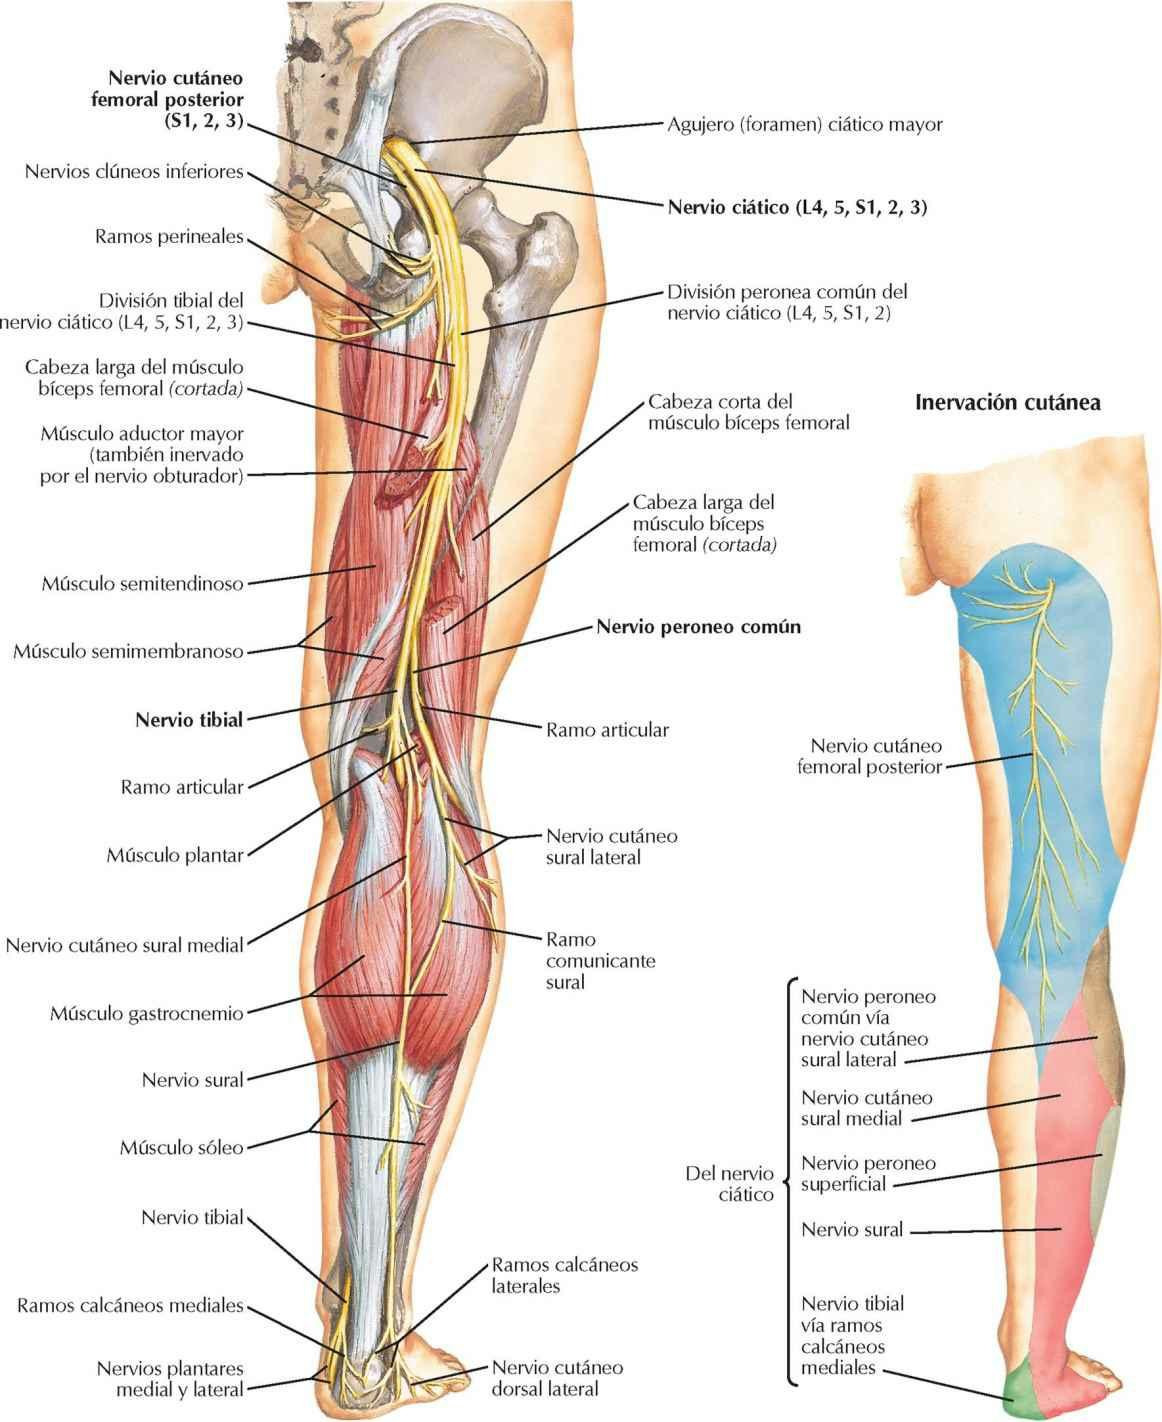 Nervio ciático y nervio cutáneo femoral posterior